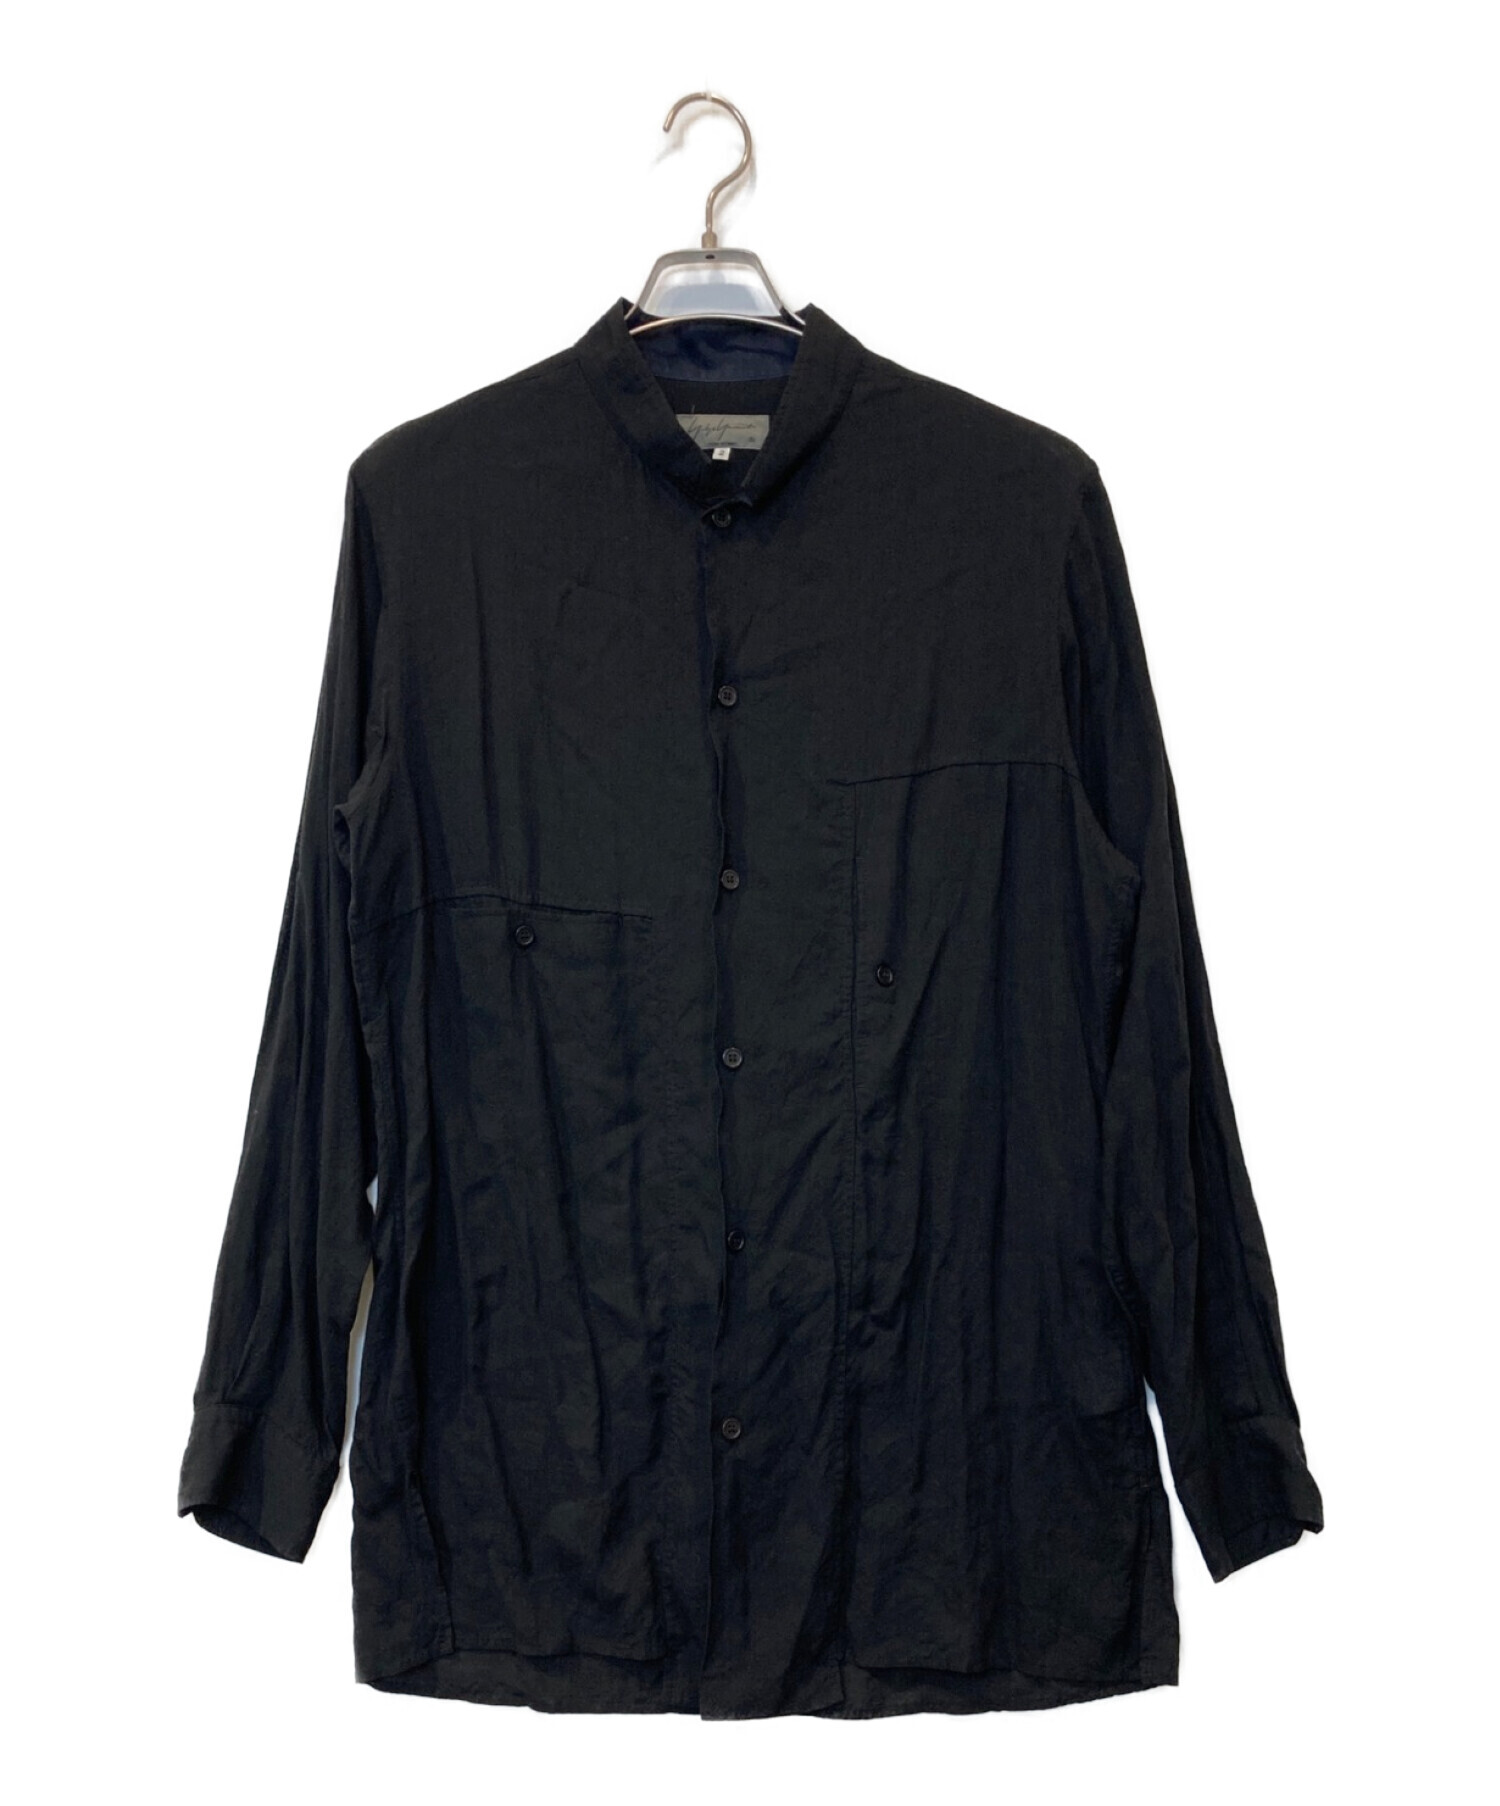 Yohji Yamamoto pour homme (ヨウジヤマモト プールオム) スタンドカラーシャツ ブラック サイズ:2